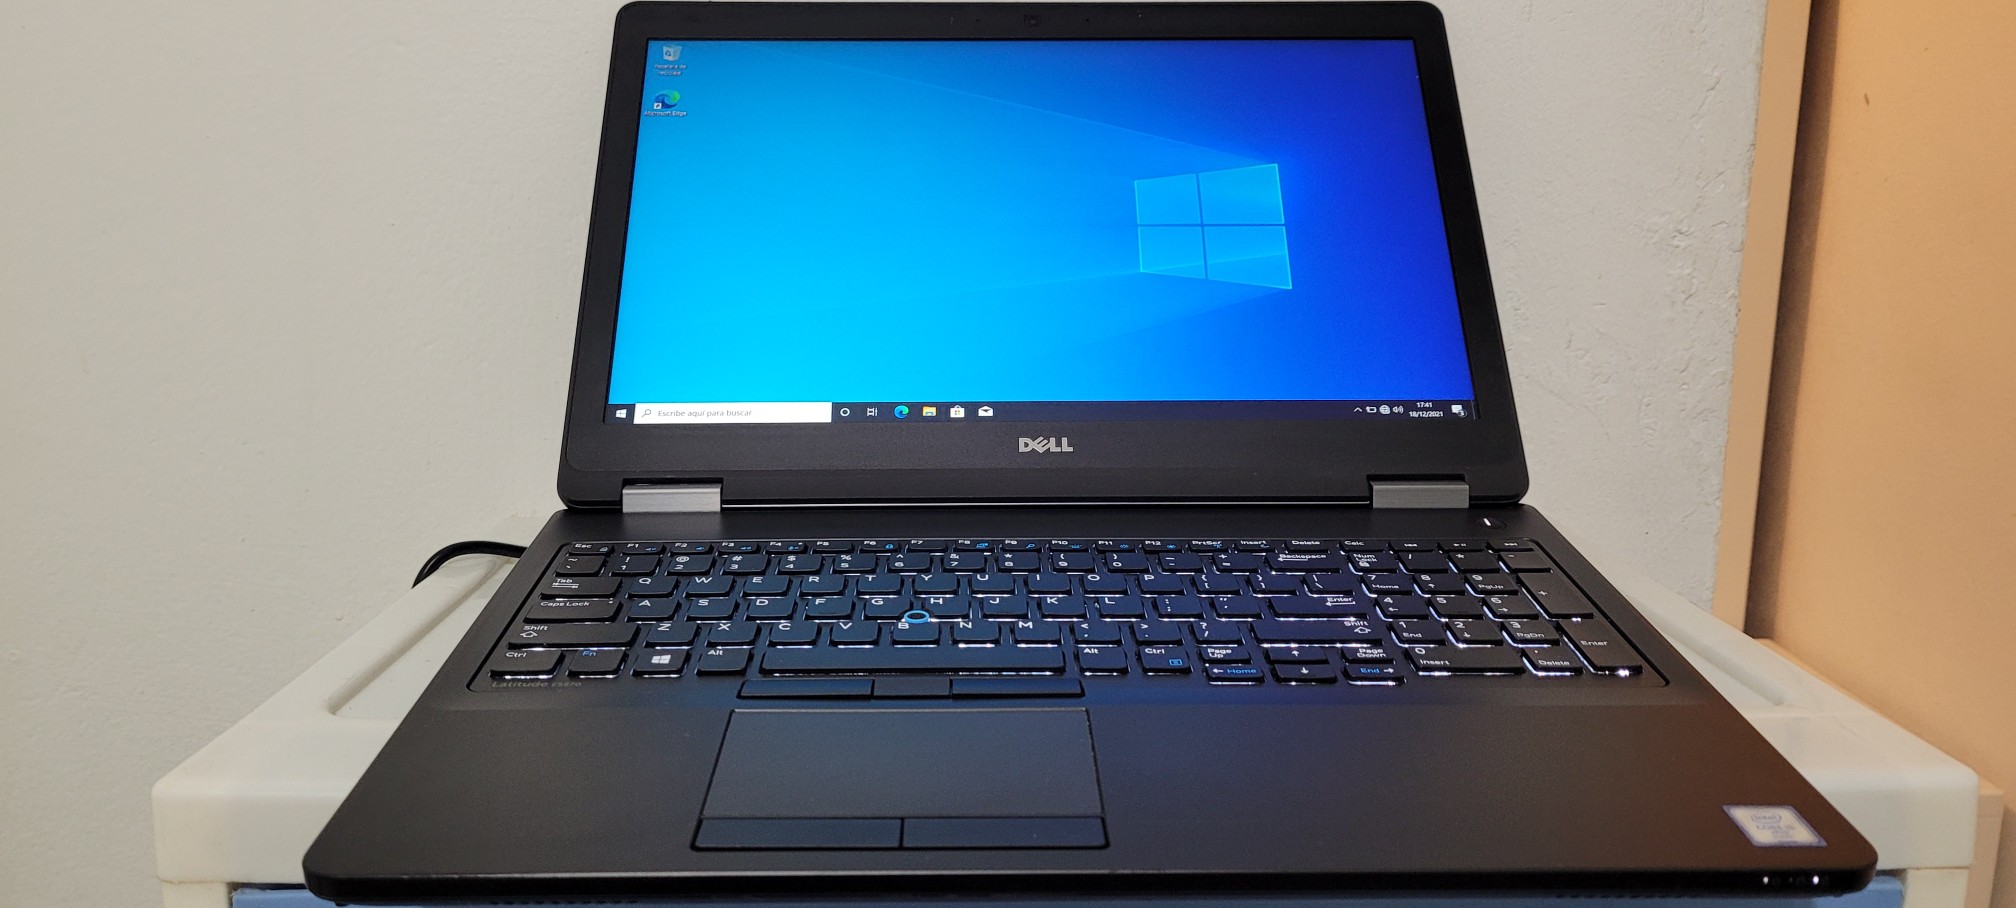 computadoras y laptops - Dell 5570 17 Pulg Core i5 6ta Gen Ram 8gb ddr4 Disco 128gb SSD full